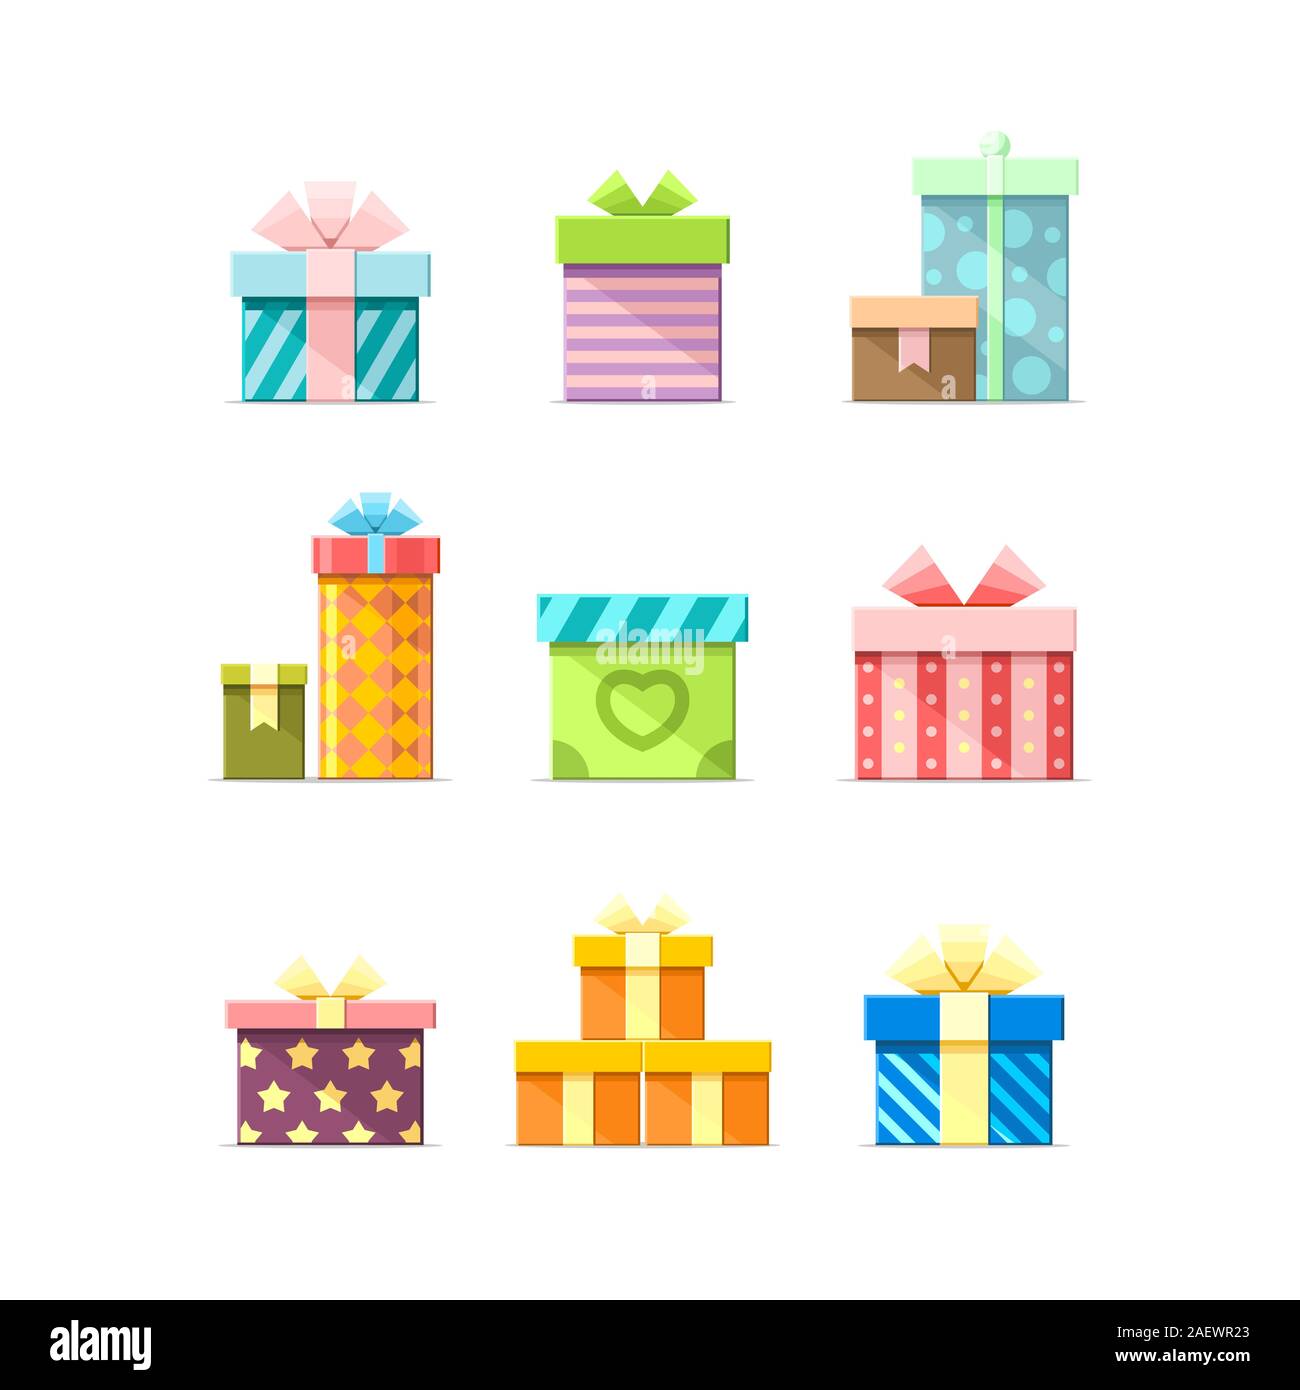 9 Bunte Vektor flache Kartons mit Bändern auf weißem Hintergrund. Paket, Geschenk, Geschenk, Geburtstag, Party, Symbole, Satz 3 Stock Vektor